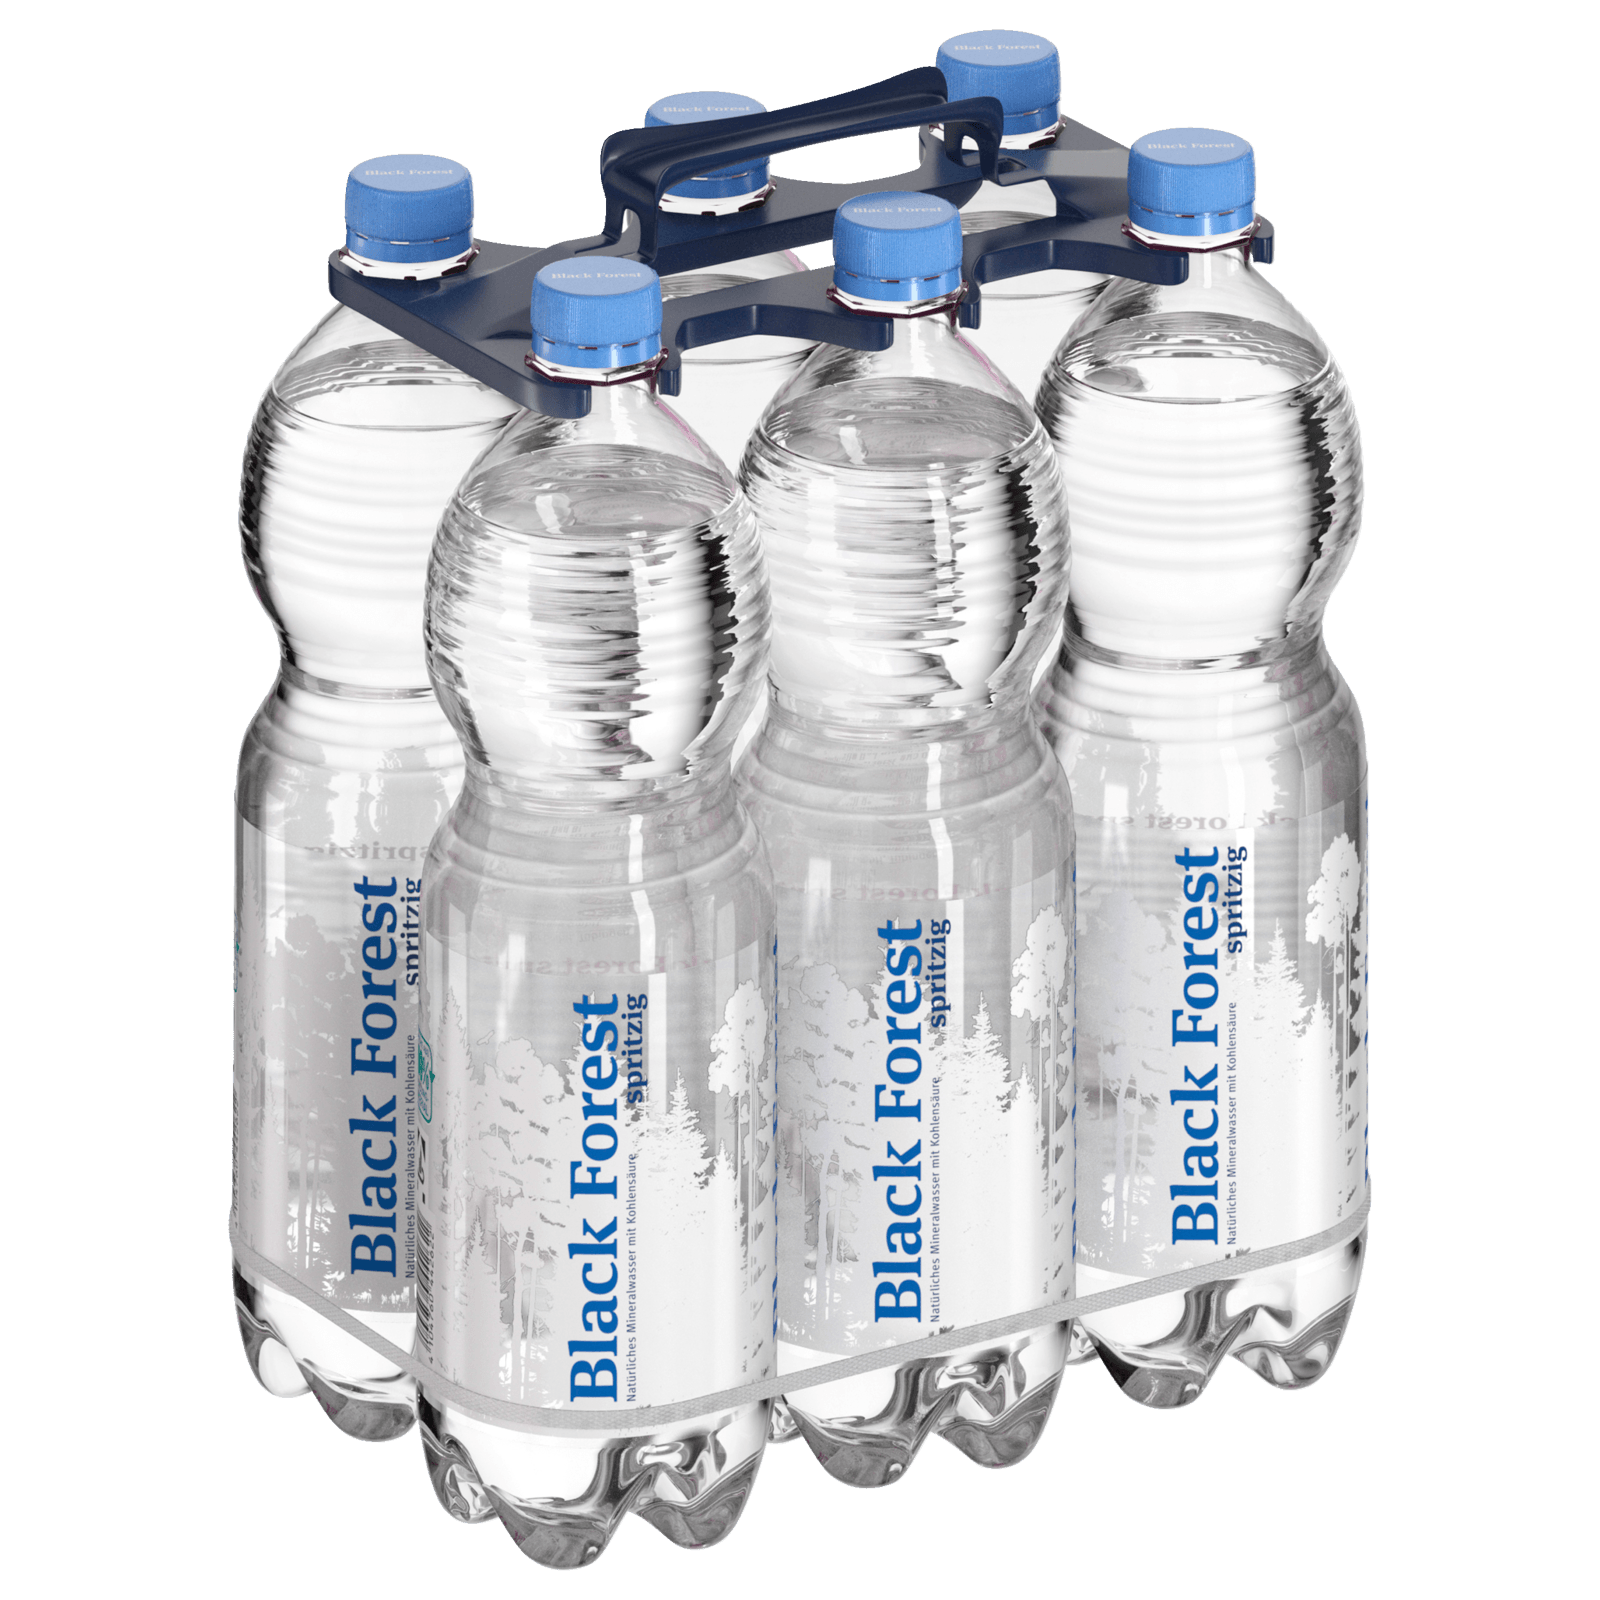 Black Forest Mineralwasser spritzig 6x1l bei REWE online bestellen!